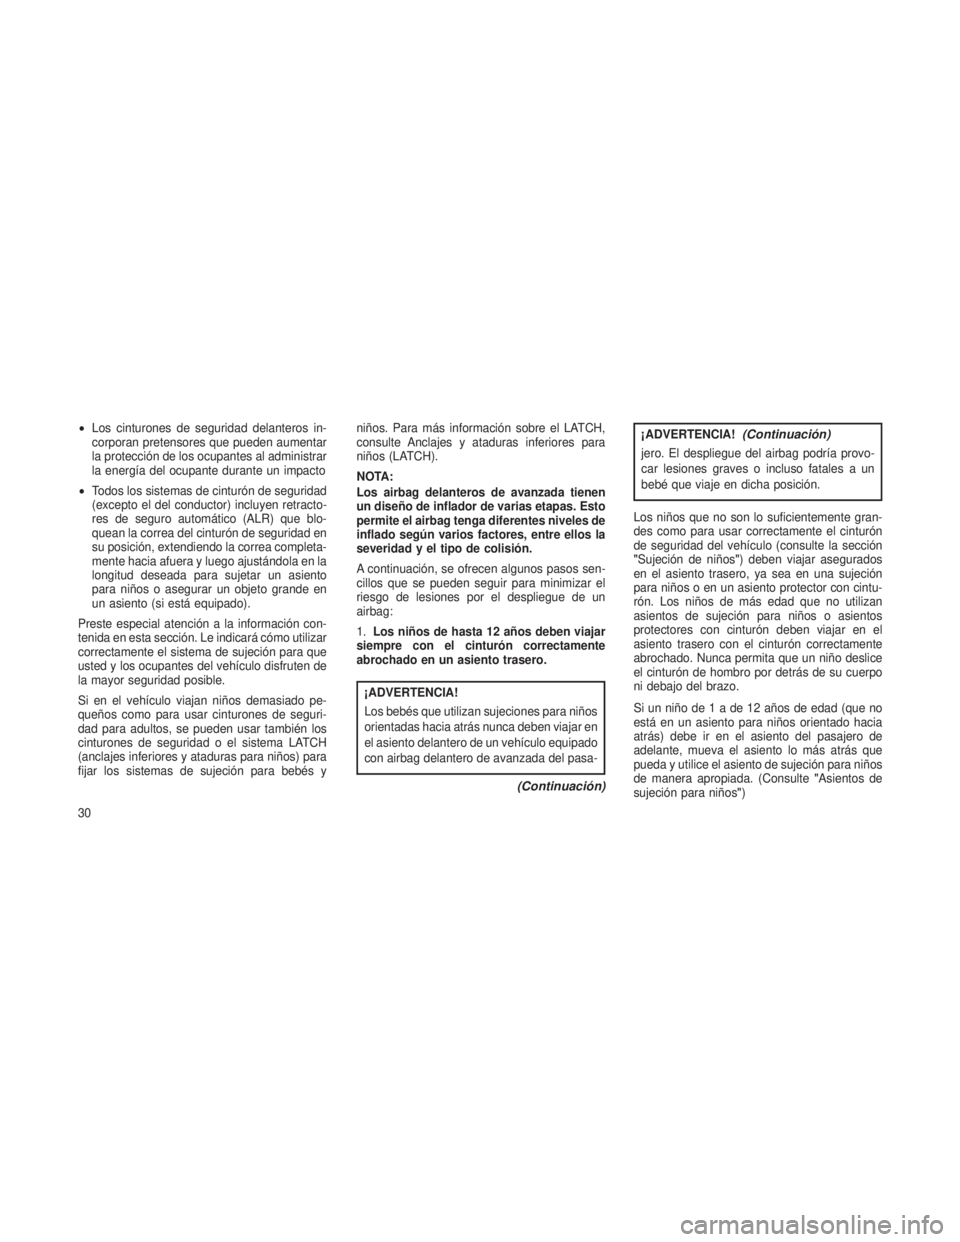 JEEP PATRIOT 2018  Manual de Empleo y Cuidado (in Spanish) •Los cinturones de seguridad delanteros in-
corporan pretensores que pueden aumentar
la protección de los ocupantes al administrar
la energía del ocupante durante un impacto
• Todos los sistemas